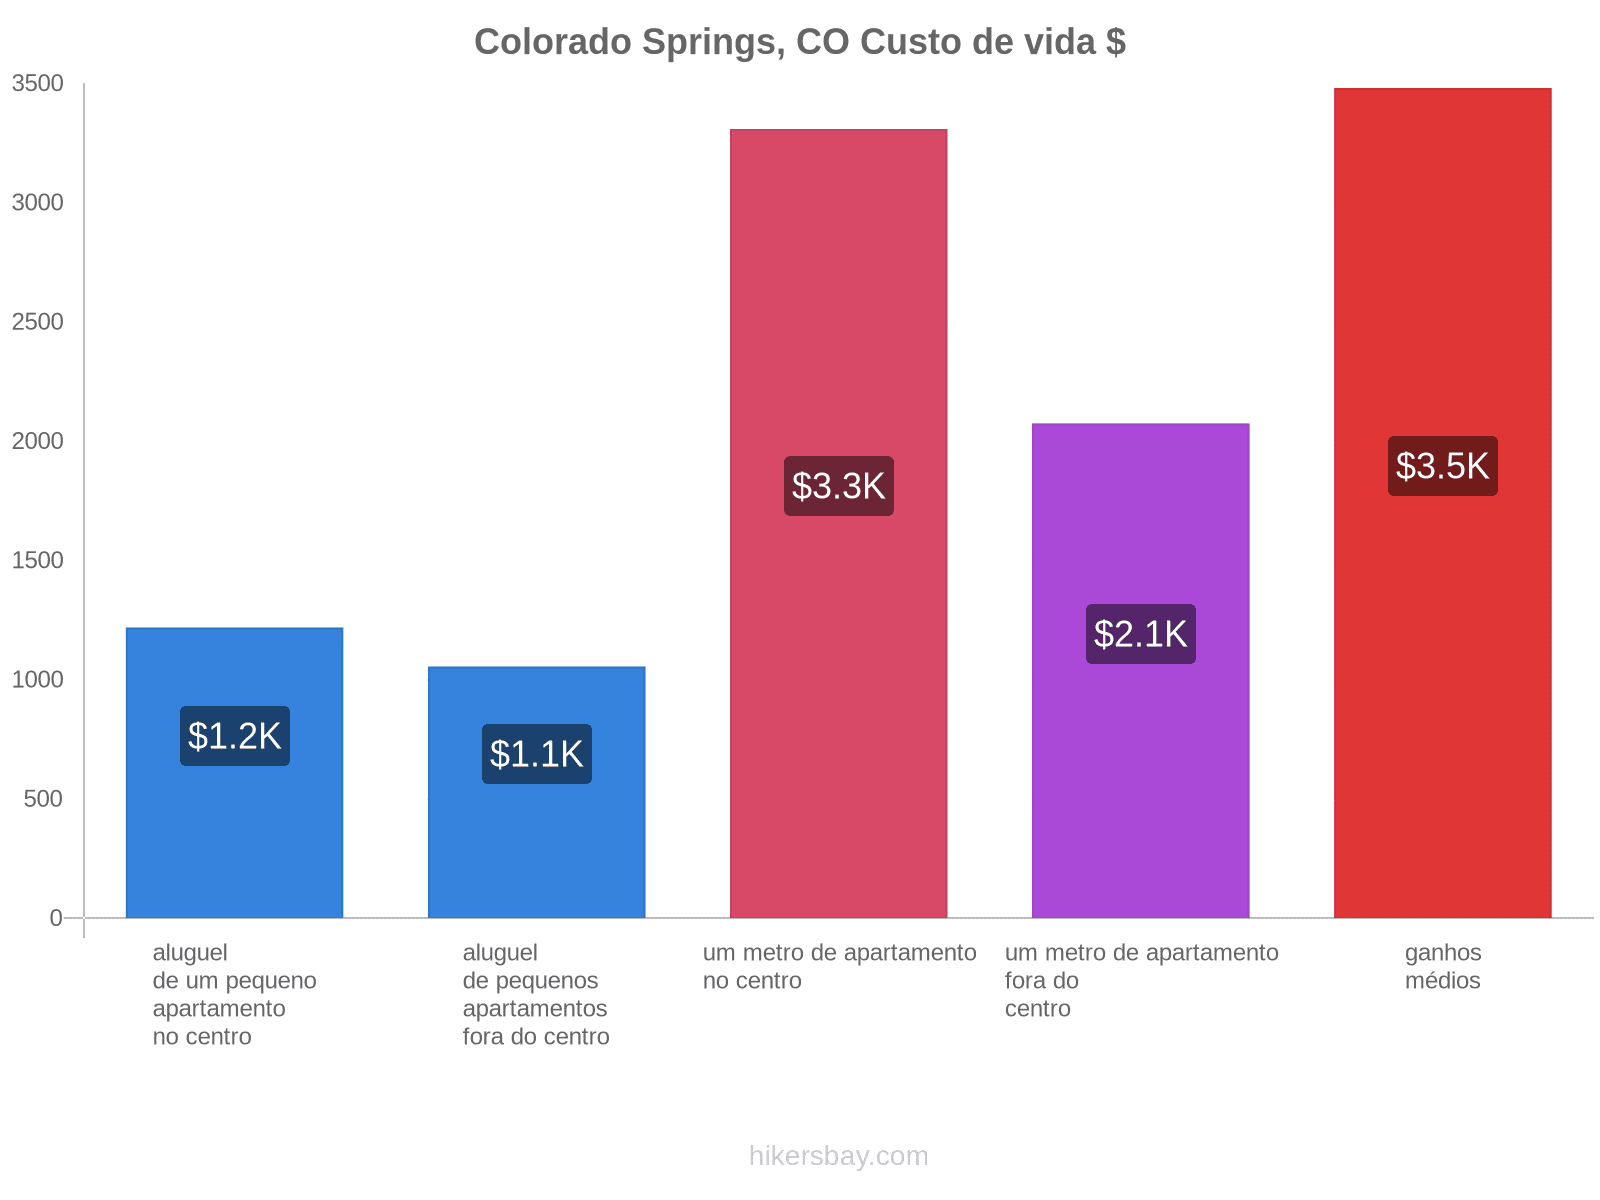 Colorado Springs, CO custo de vida hikersbay.com